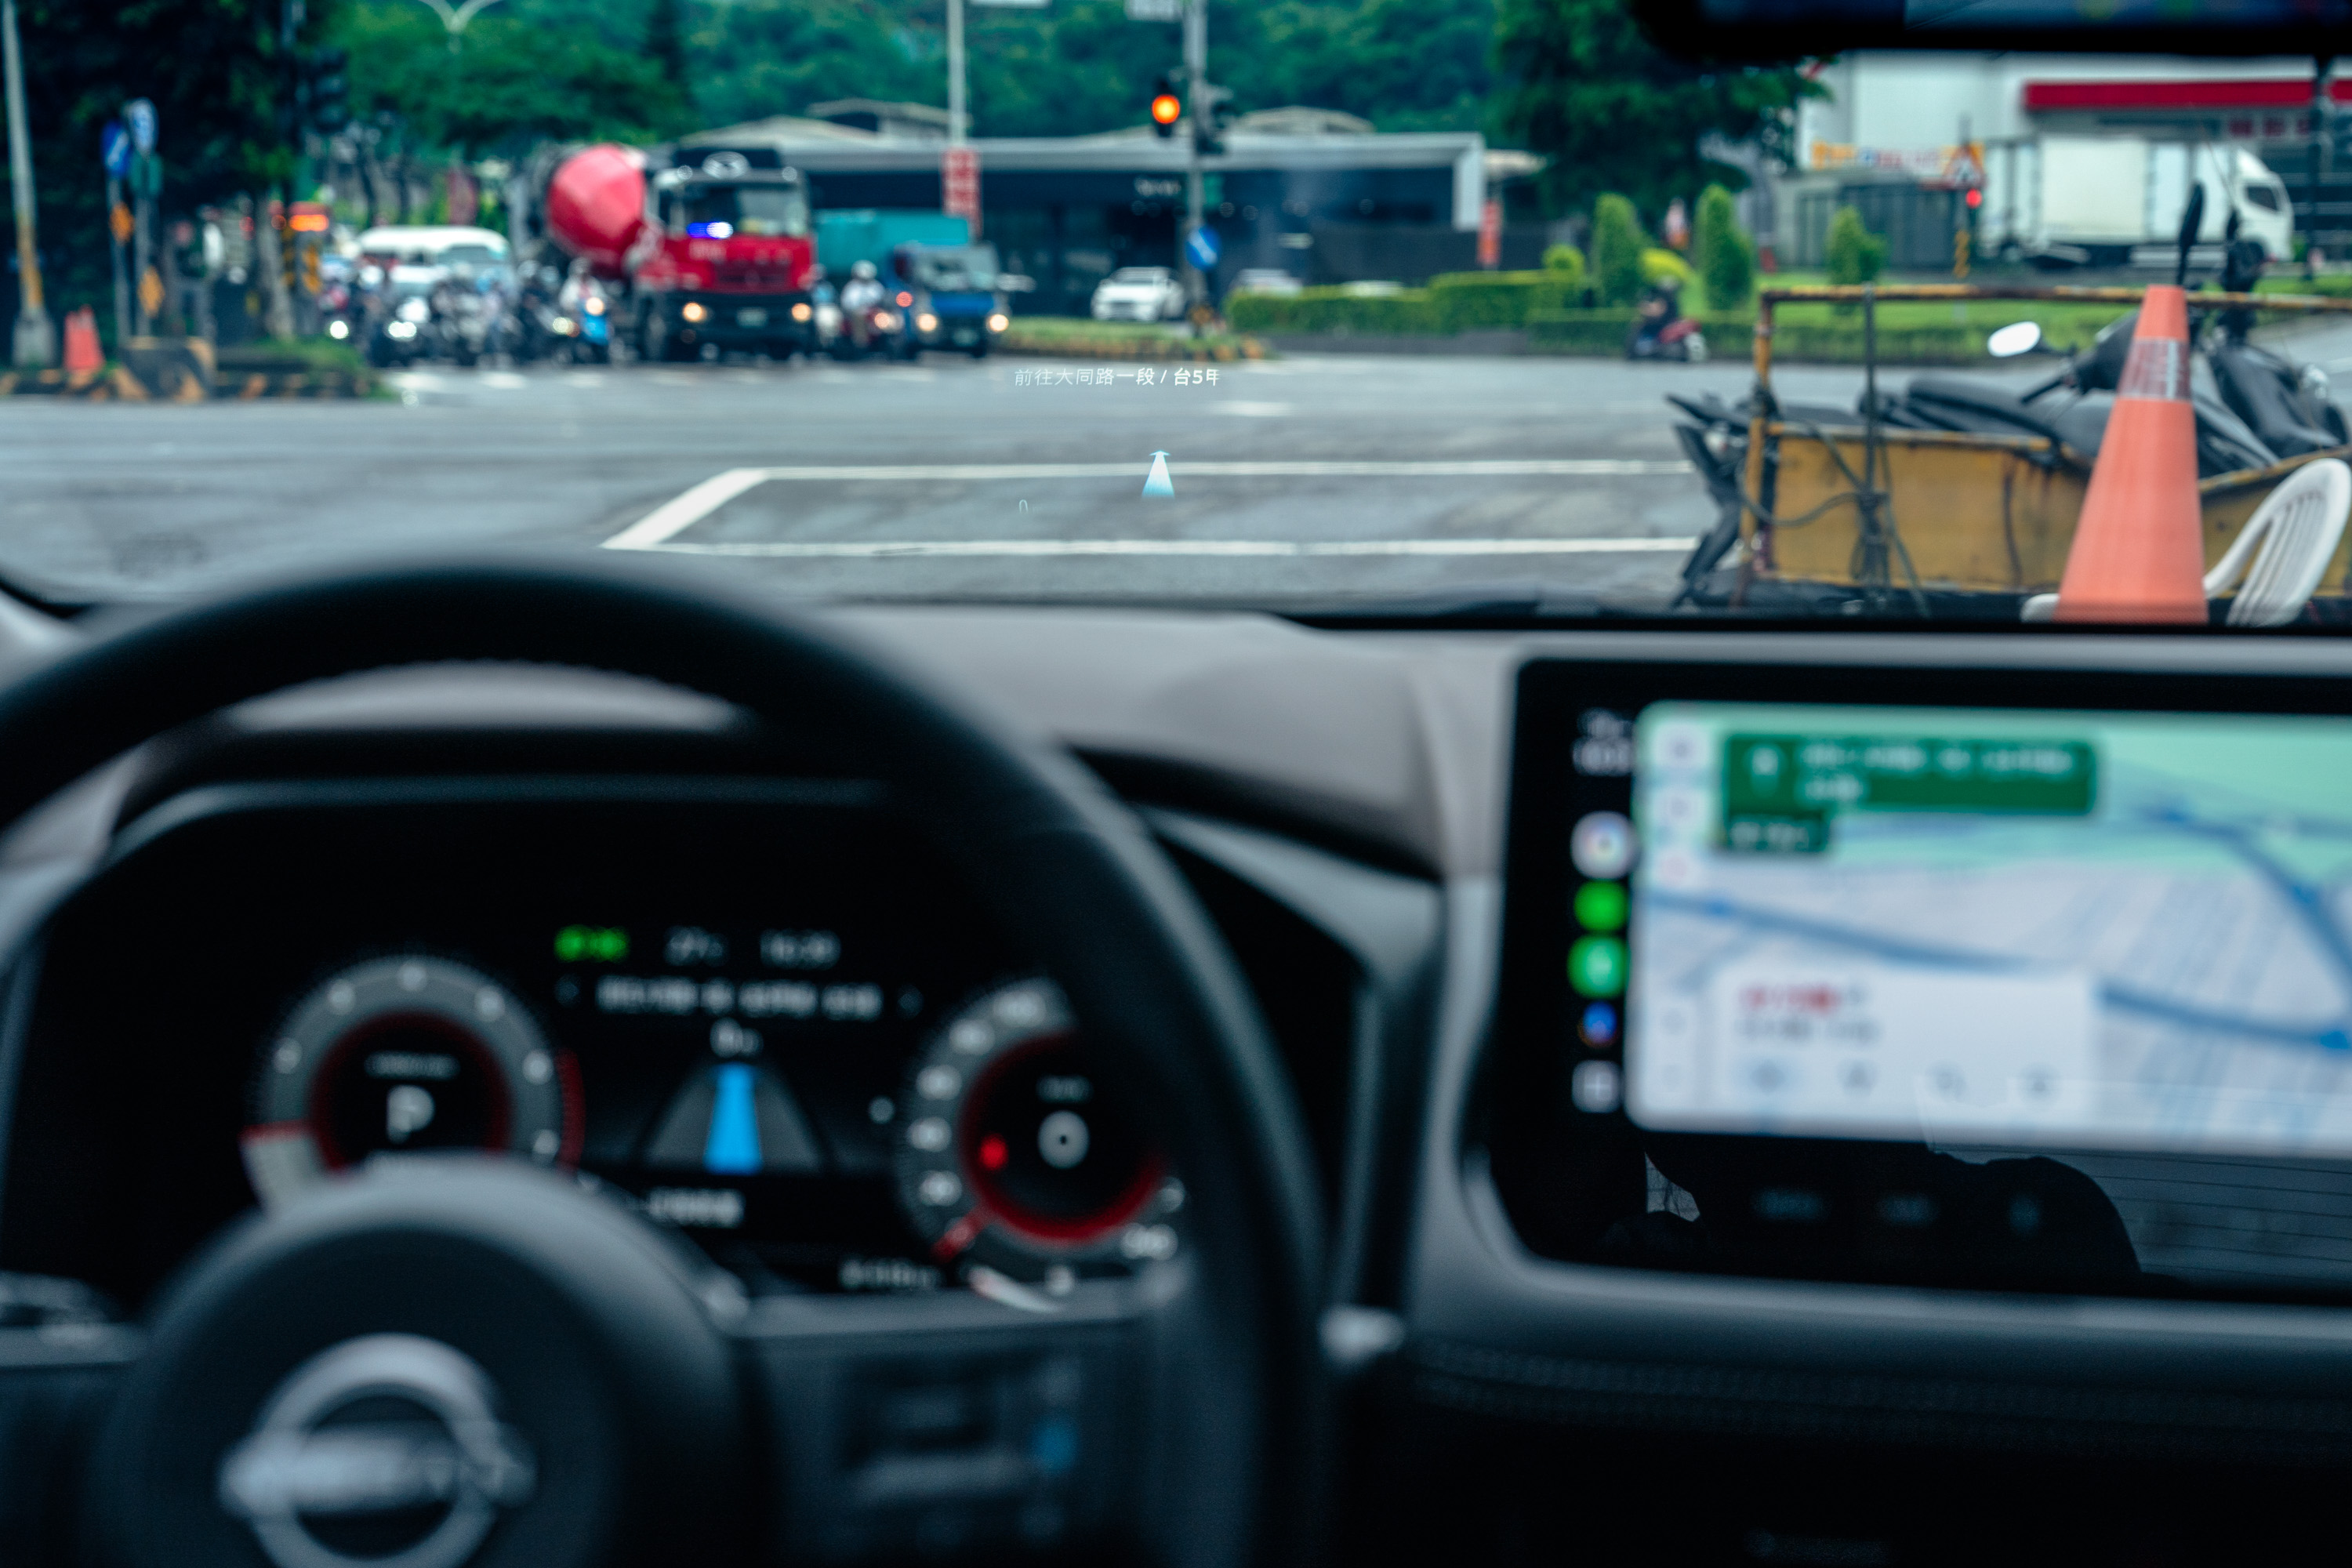 X-TRAIL旗艦版配備抬頭顯示器，採用10.8吋雙曲面技術，除了投影基本行車資訊以外，也可投影手機的原生導航系統，加上手機本身、儀表板與車機的共同顯示，達到四螢幕連動的導航顯示功能。